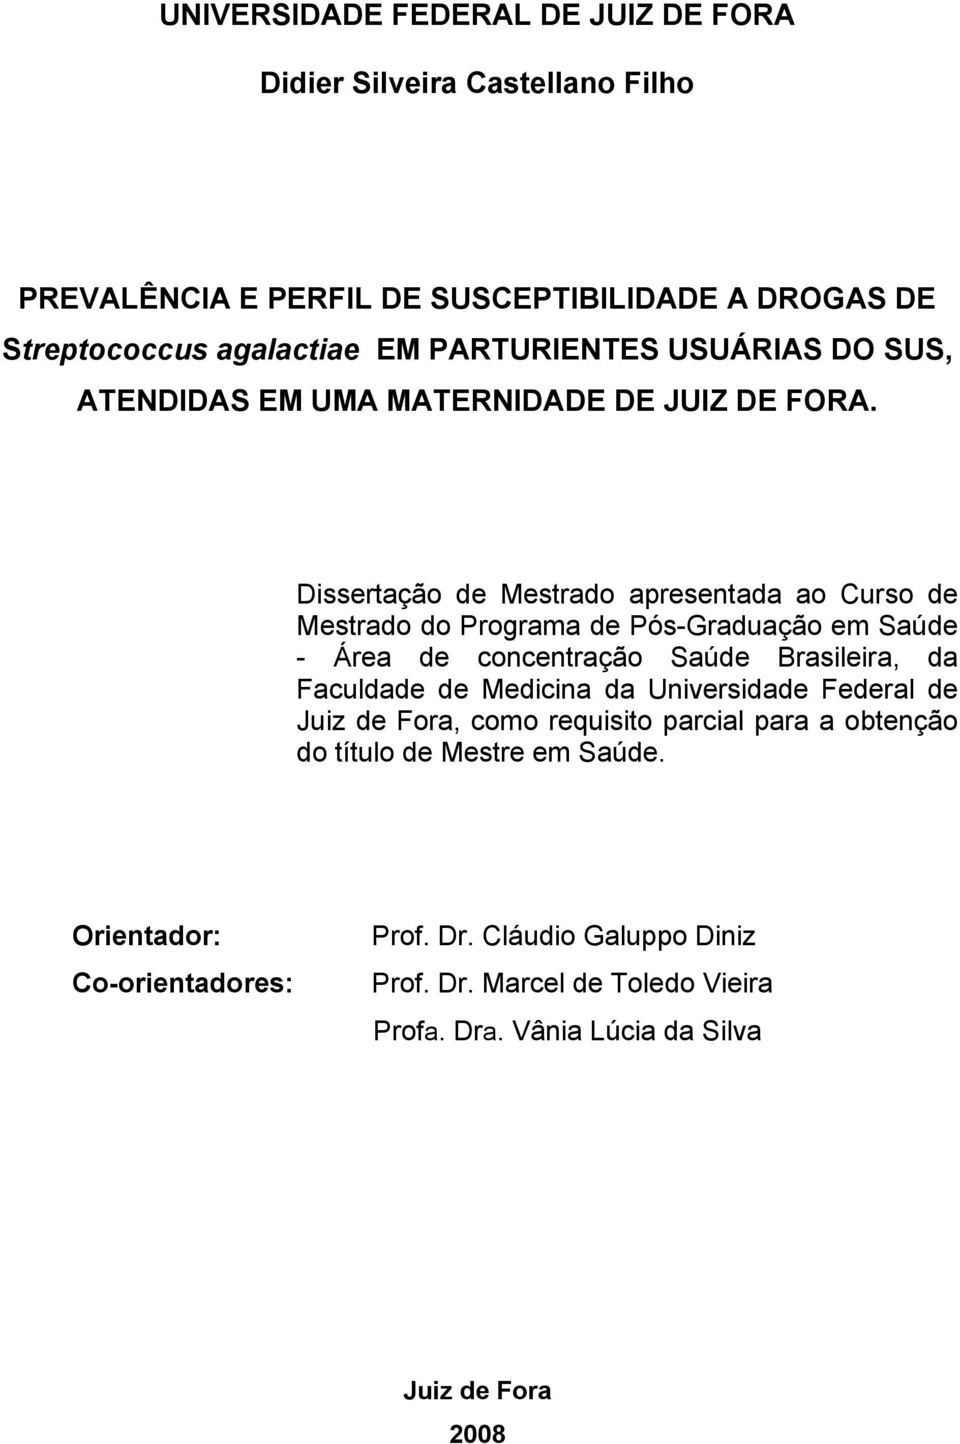 Dissertação de Mestrado apresentada ao Curso de Mestrado do Programa de Pós-Graduação em Saúde - Área de concentração Saúde Brasileira, da Faculdade de Medicina